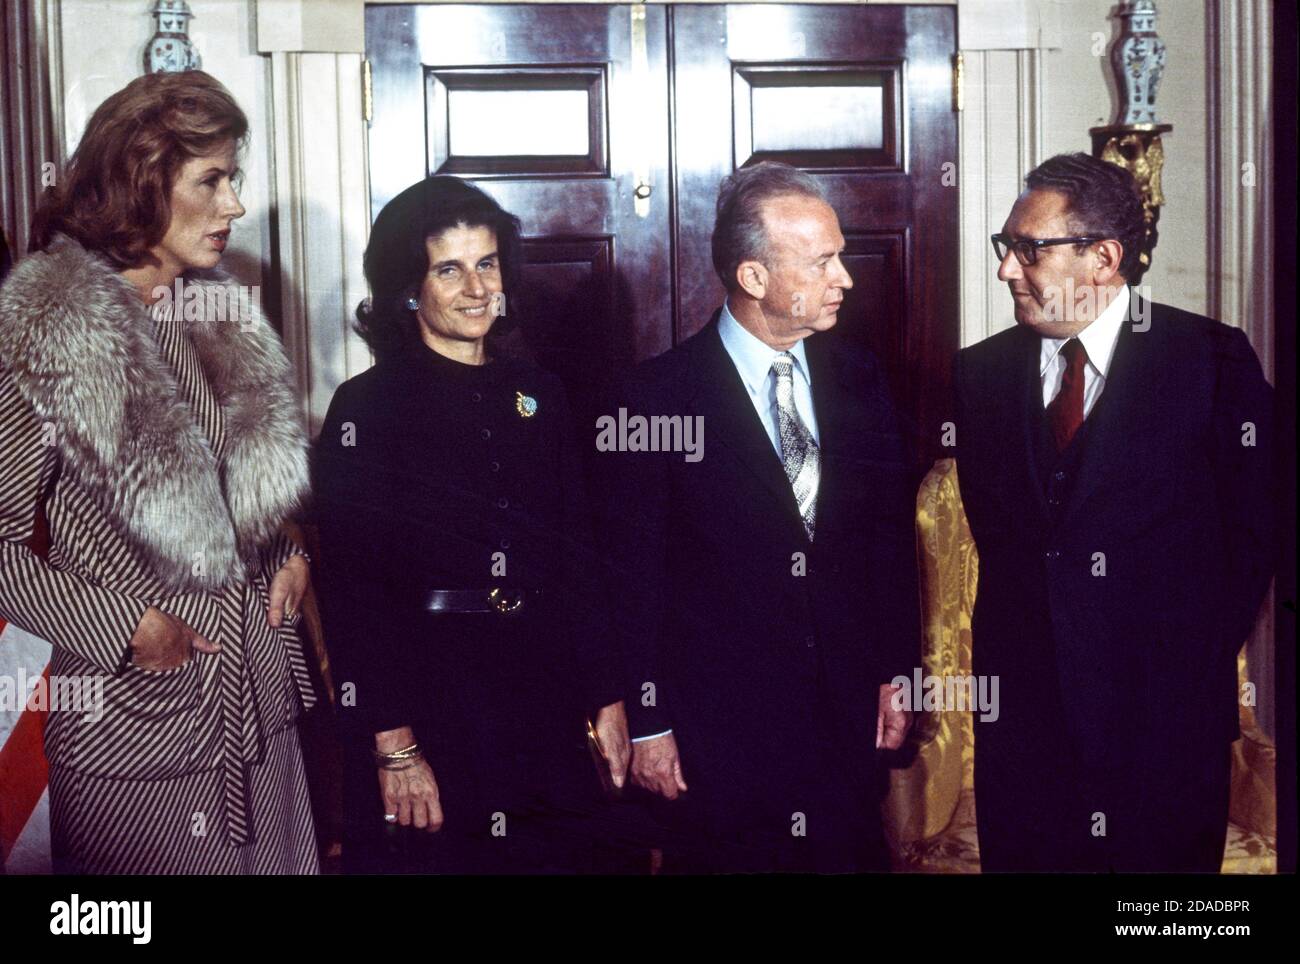 US-Außenminister Henry A. Kissinger, rechts, spricht mit Premierminister Yitzhak Rabin aus Israel, rechts in der Mitte, während sie am 28. Januar 1976 bei einem Empfang im US-Außenministerium in Washington, DC, in einer Empfangsleitung stehen. Links steht Frau Henry A. Kissinger (Nancy) und links in der Mitte ist Frau Yitzhak Rabin (Leah). Rabin ist für einen offiziellen Besuch in der US-Hauptstadt. Quelle: Benjamin E. 'Gene' Forte - CNP / MediaPunch Stockfoto